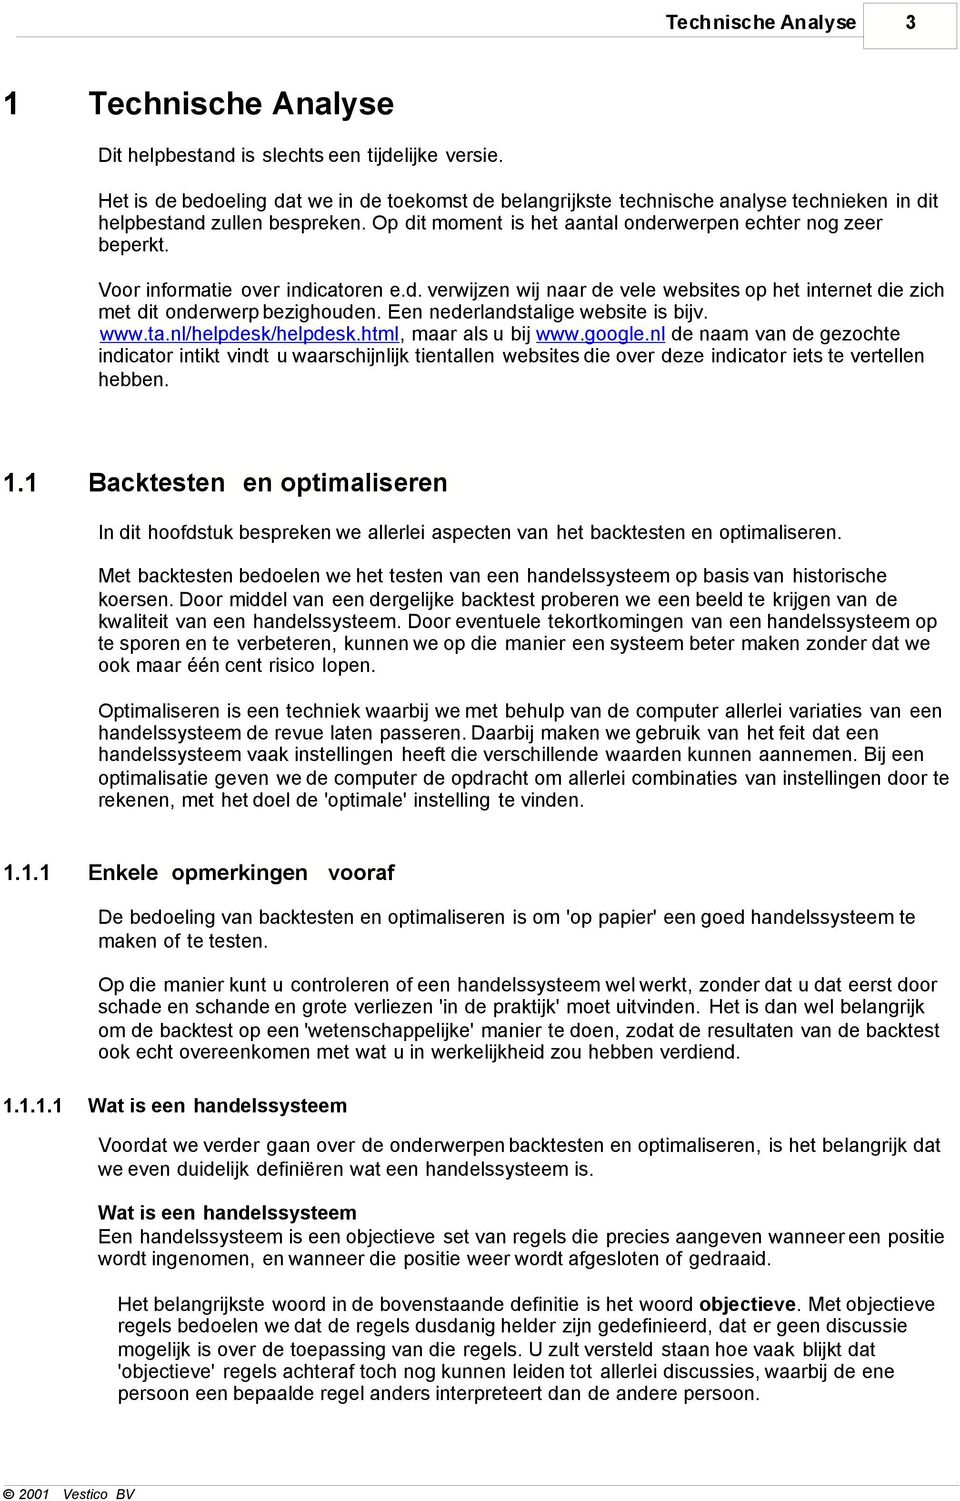 Voor informatie over indicatoren e.d. verwijzen wij naar de vele websites op het internet die zich met dit onderwerp bezighouden. Een nederlandstalige website is bijv. www.ta.nl/helpdesk/helpdesk.